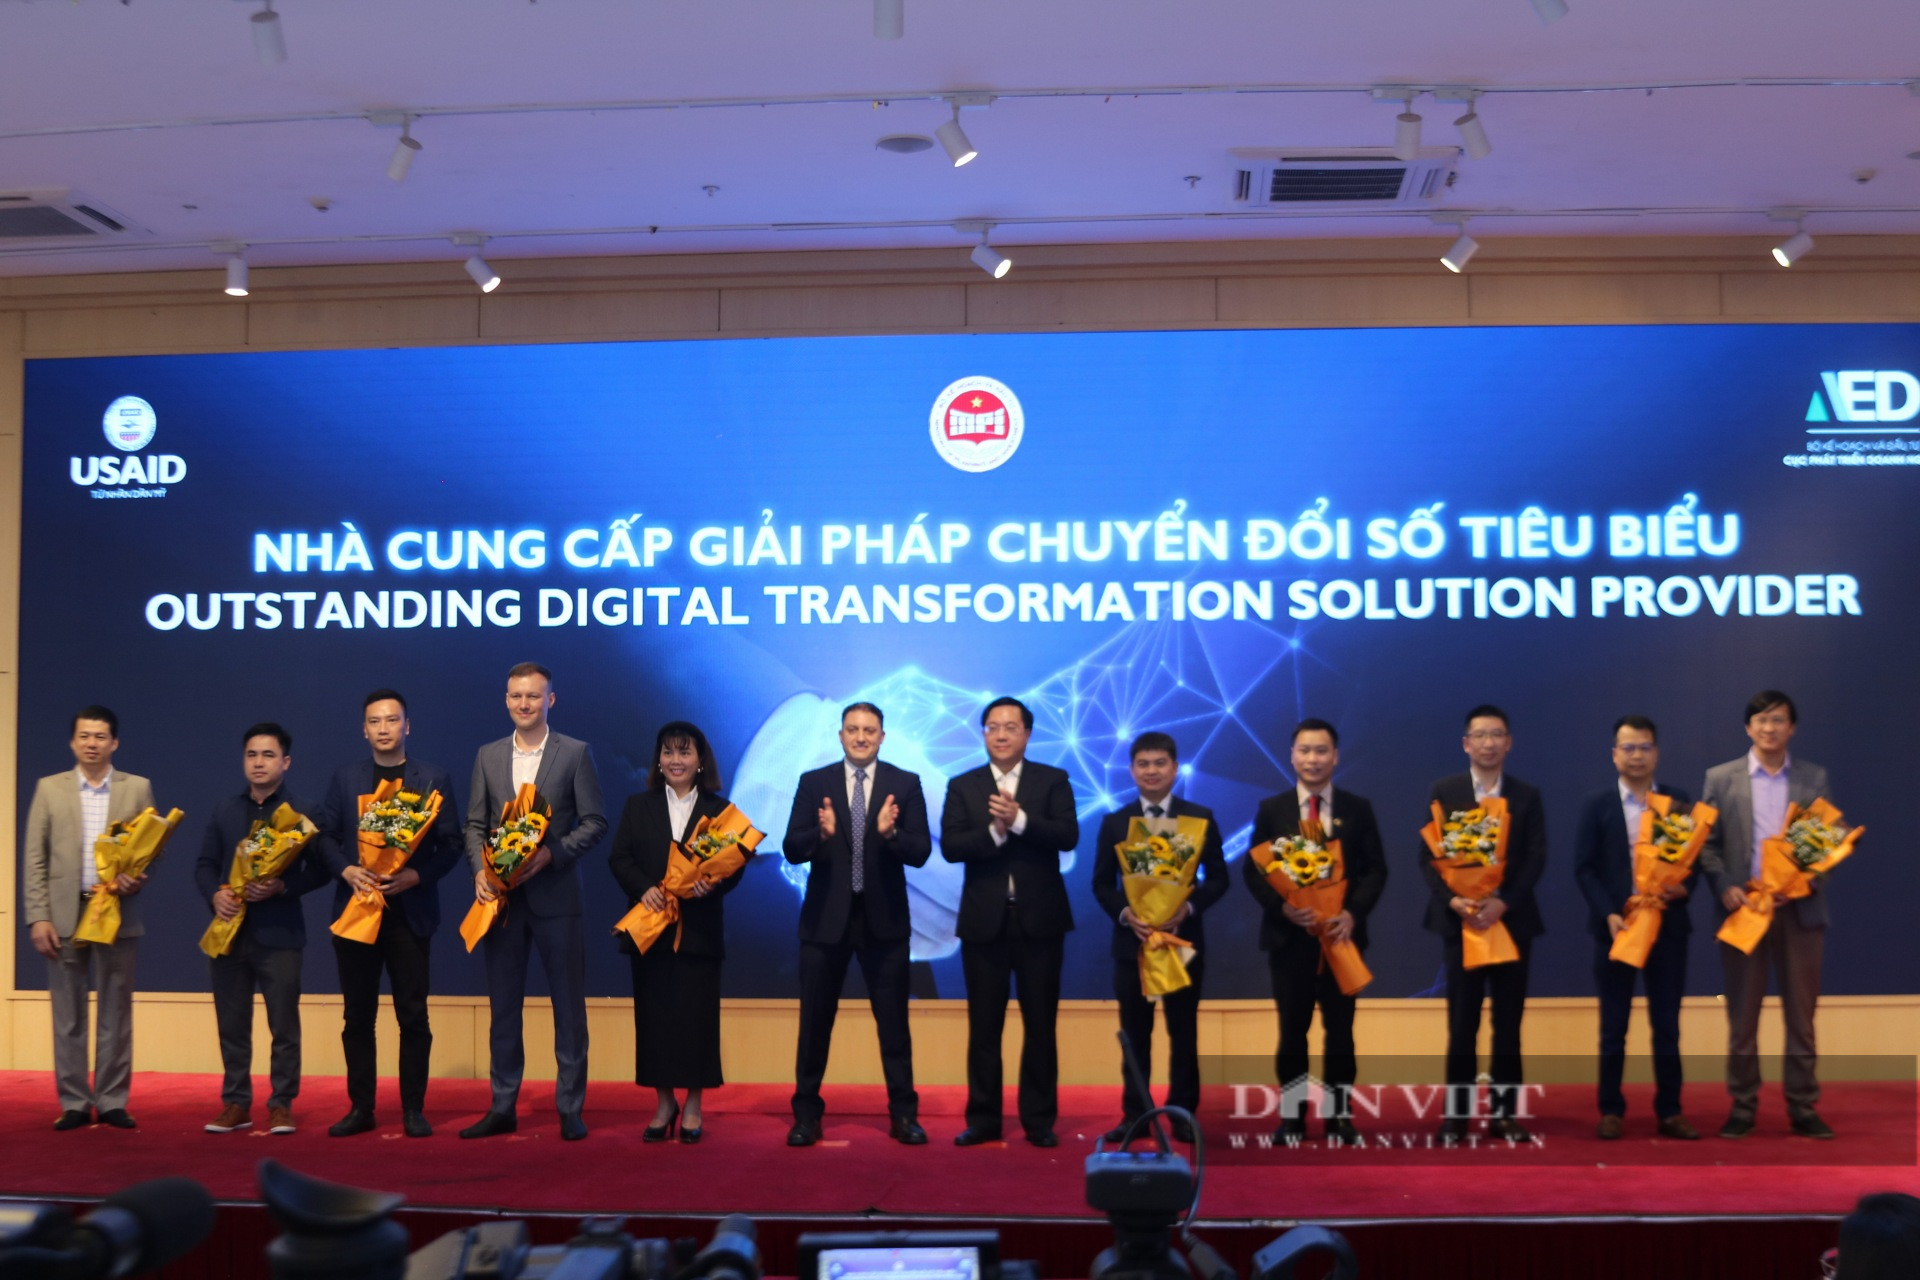 Lần đầu công bố Trang vàng giải pháp chuyển đổi số cho doanh nghiệp Việt Nam - Ảnh 3.